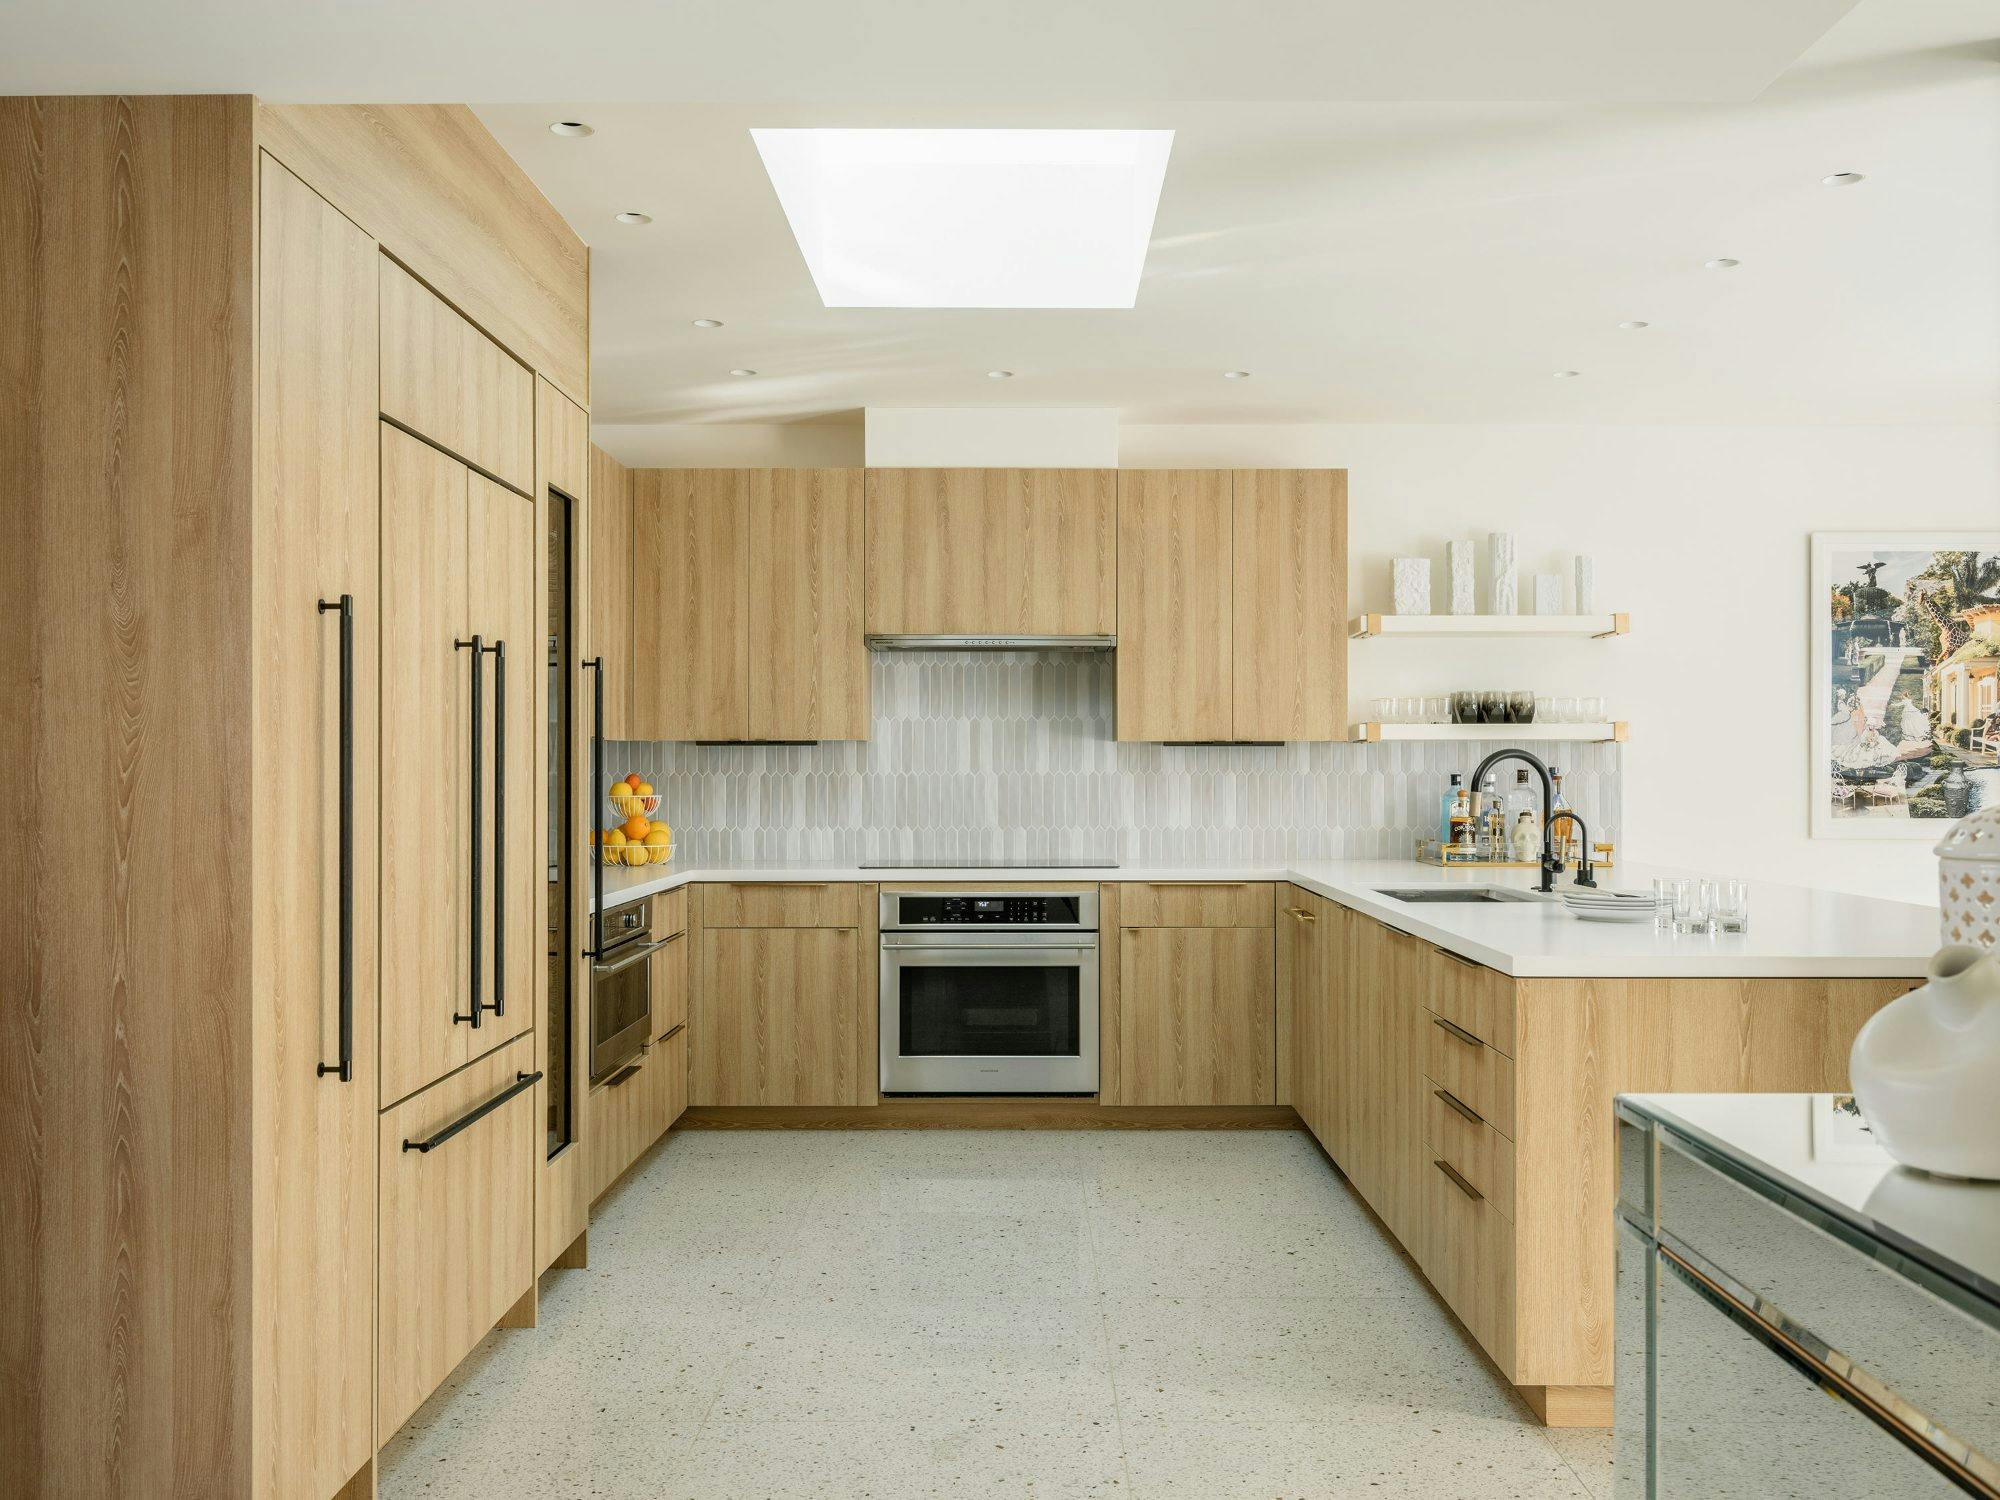 Numero immagine 32 della sezione corrente di The interior designer Staci Munic designs her dream home using Silestone di Cosentino Italia